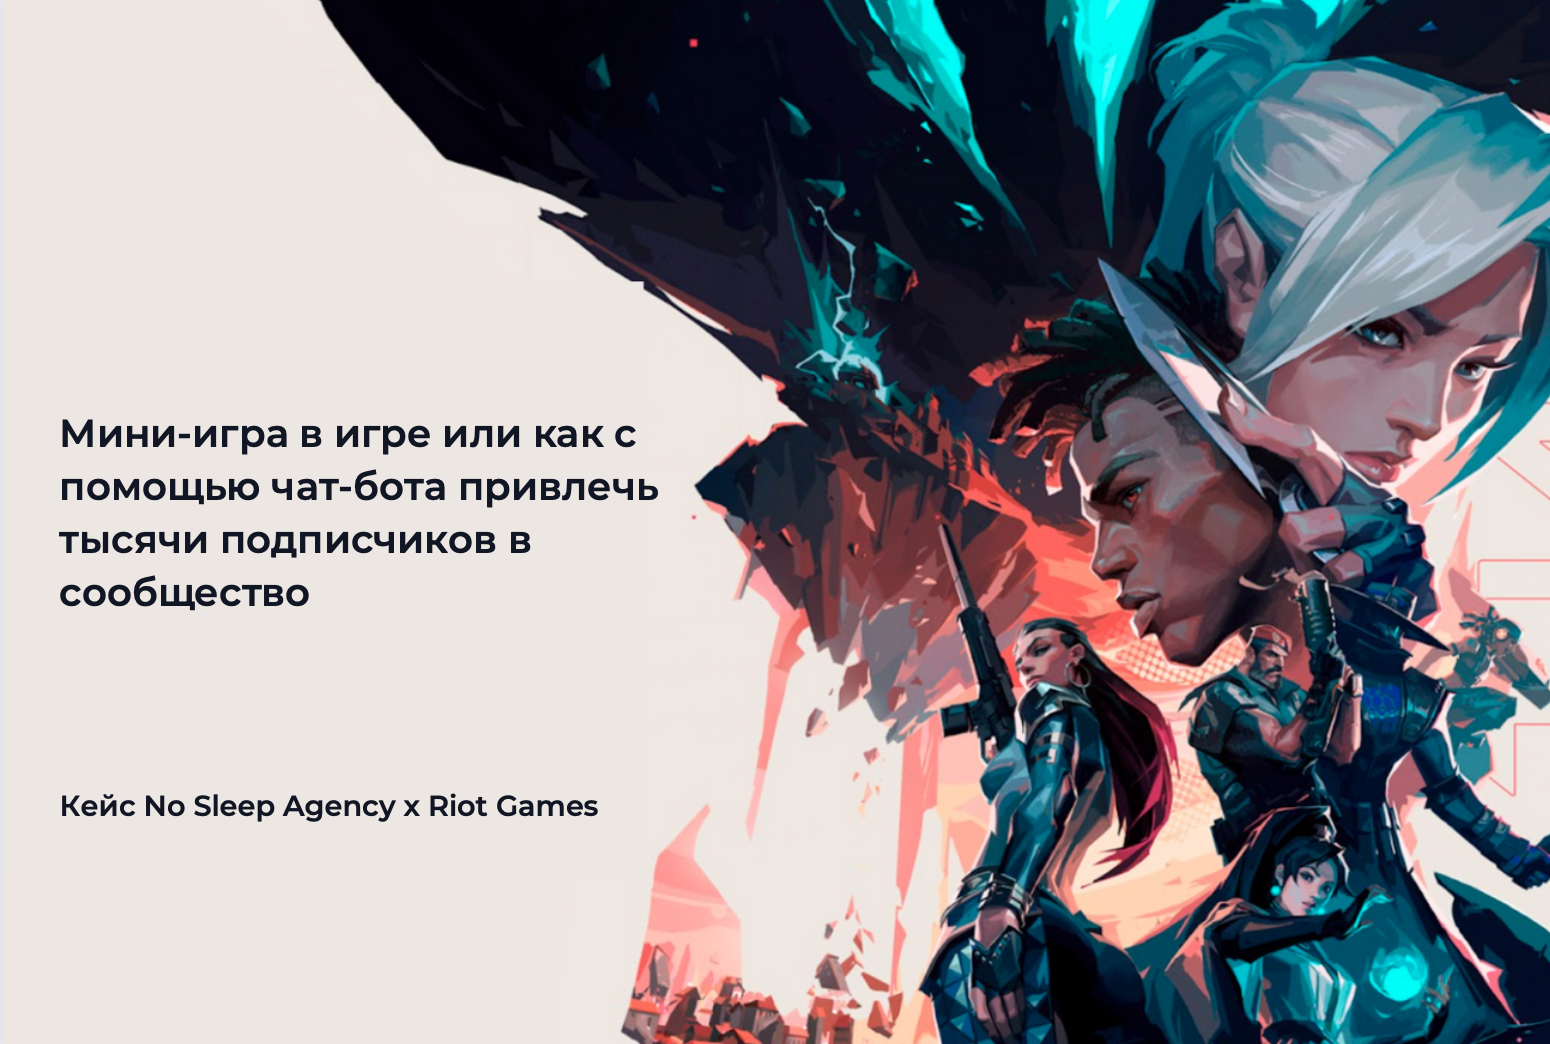 Картинка Кейс No Sleep Agency x Riot Games: мини-игра в игре, или Как с помощью чат-бота привлечь тысячи подписчиков в сообщество